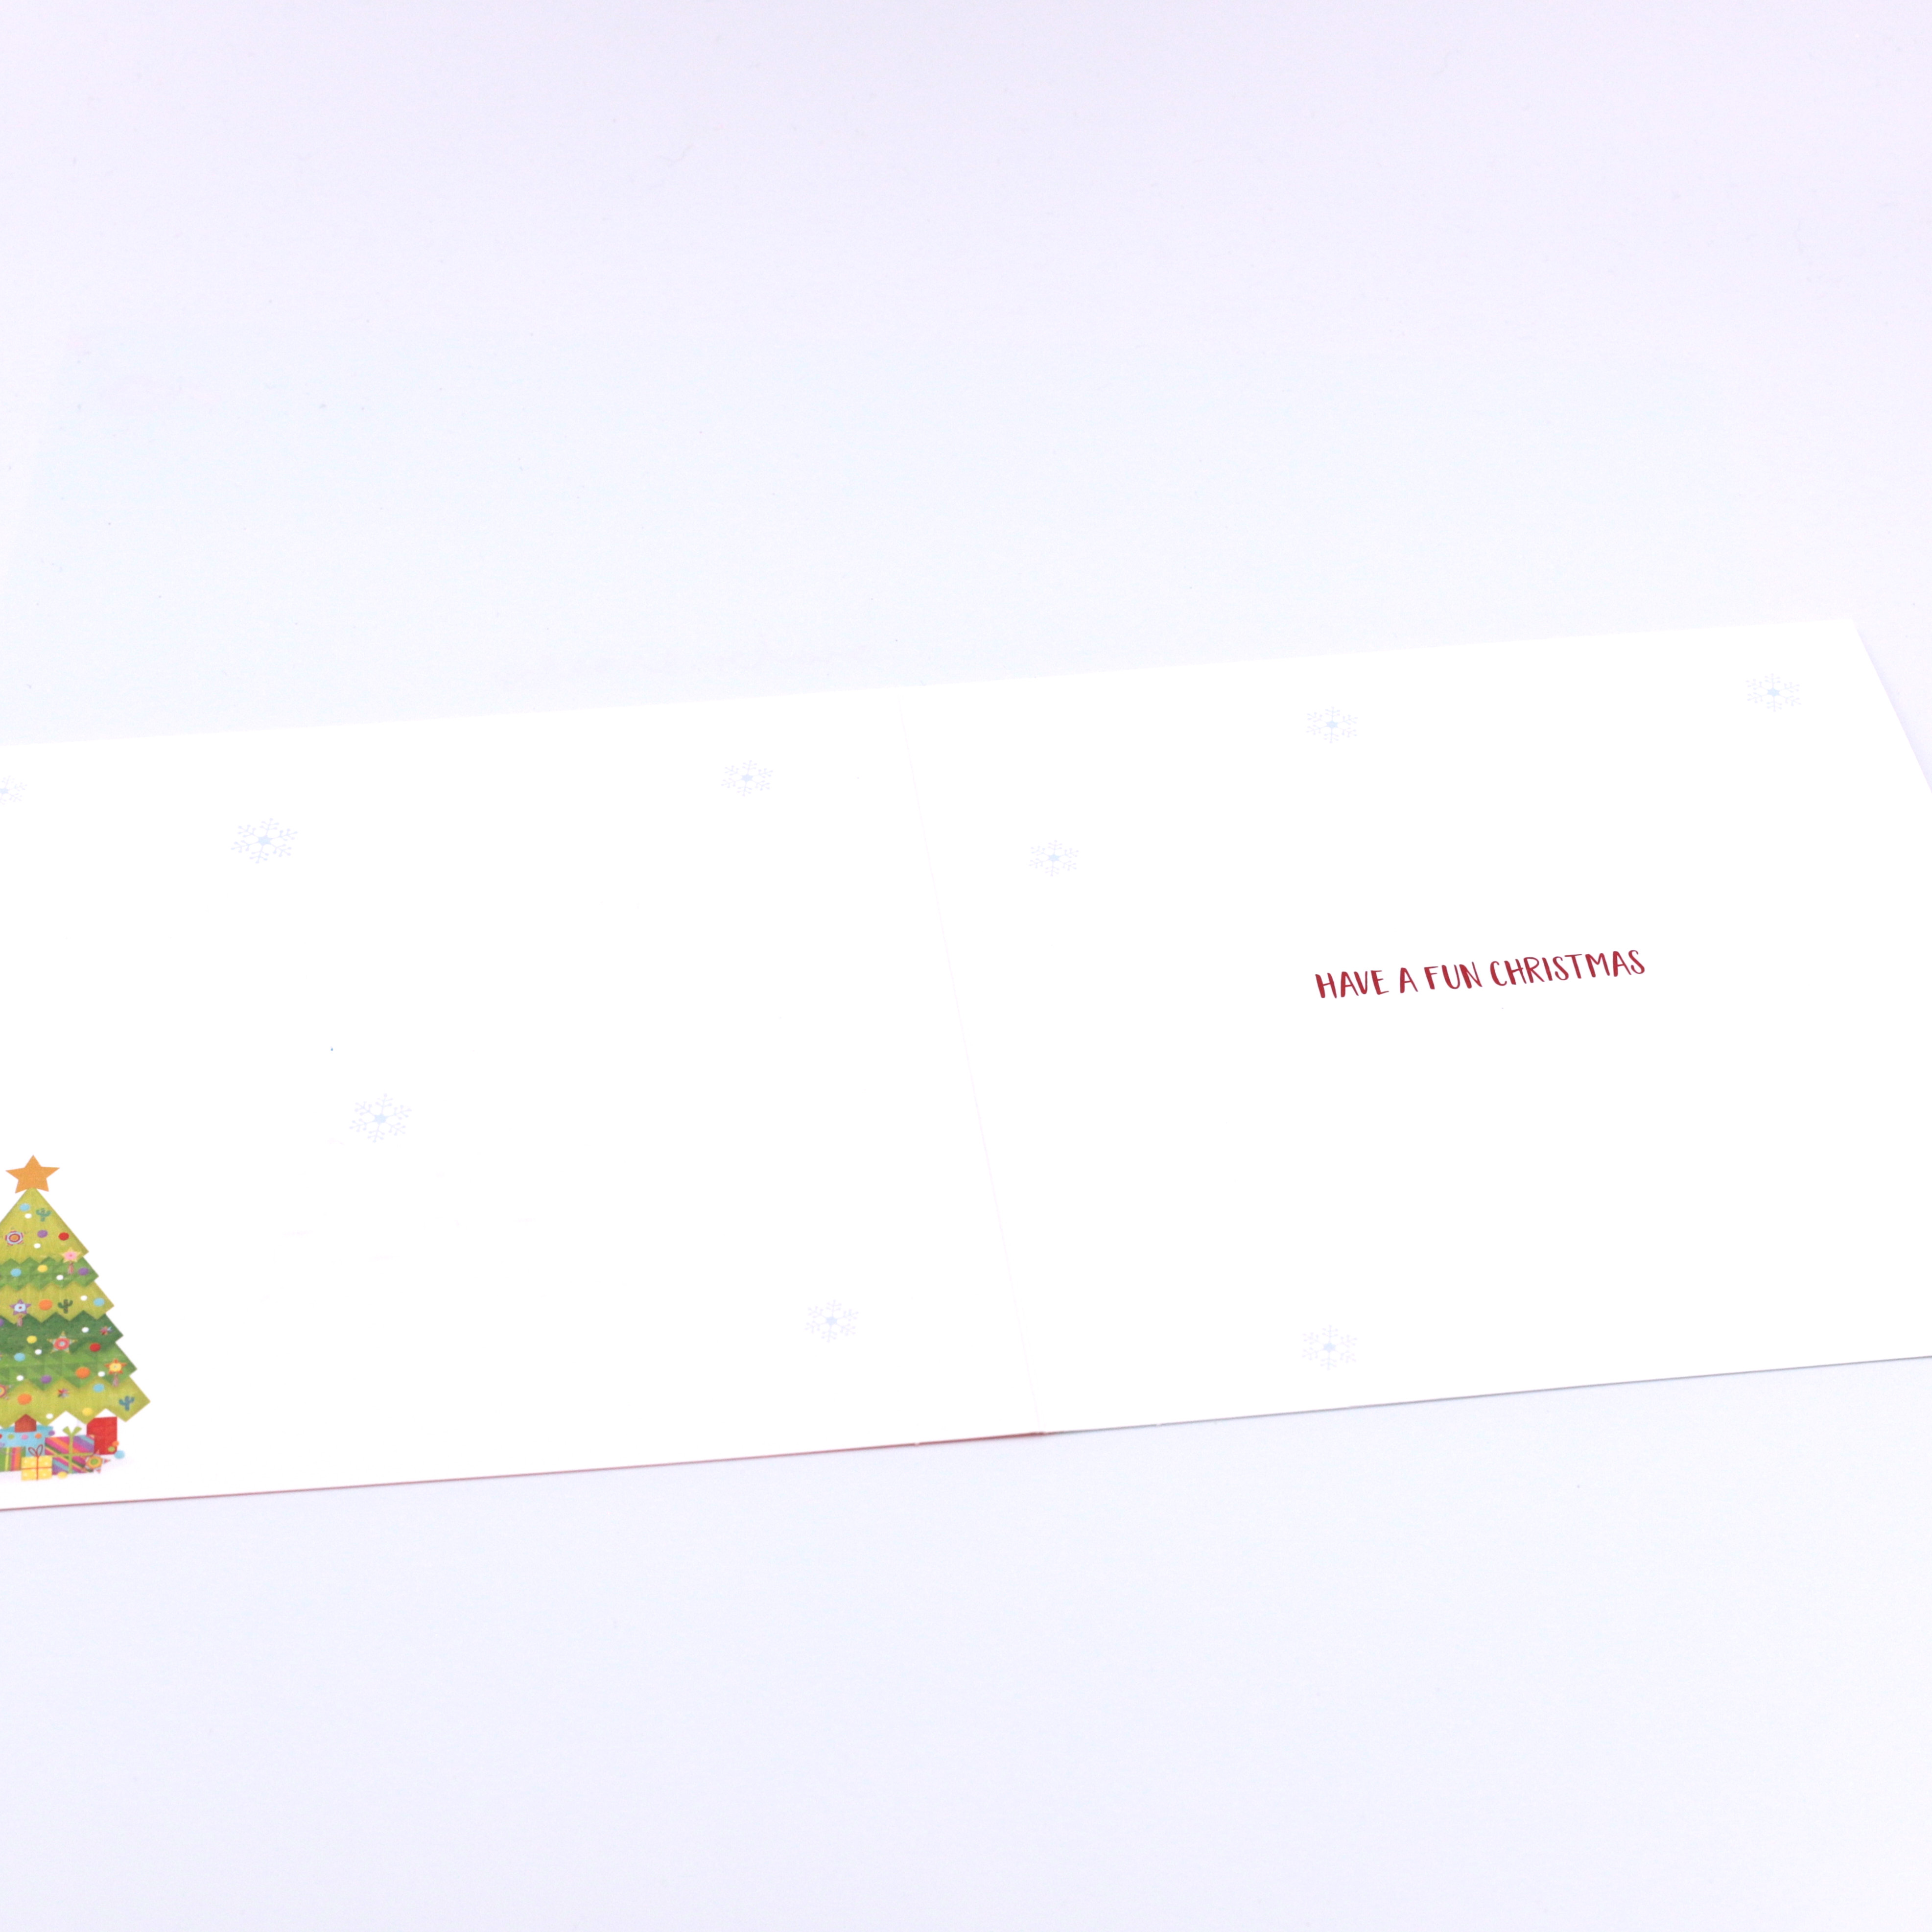 Christmas Card - Mum And Dad, Christmas Tree And Llamas